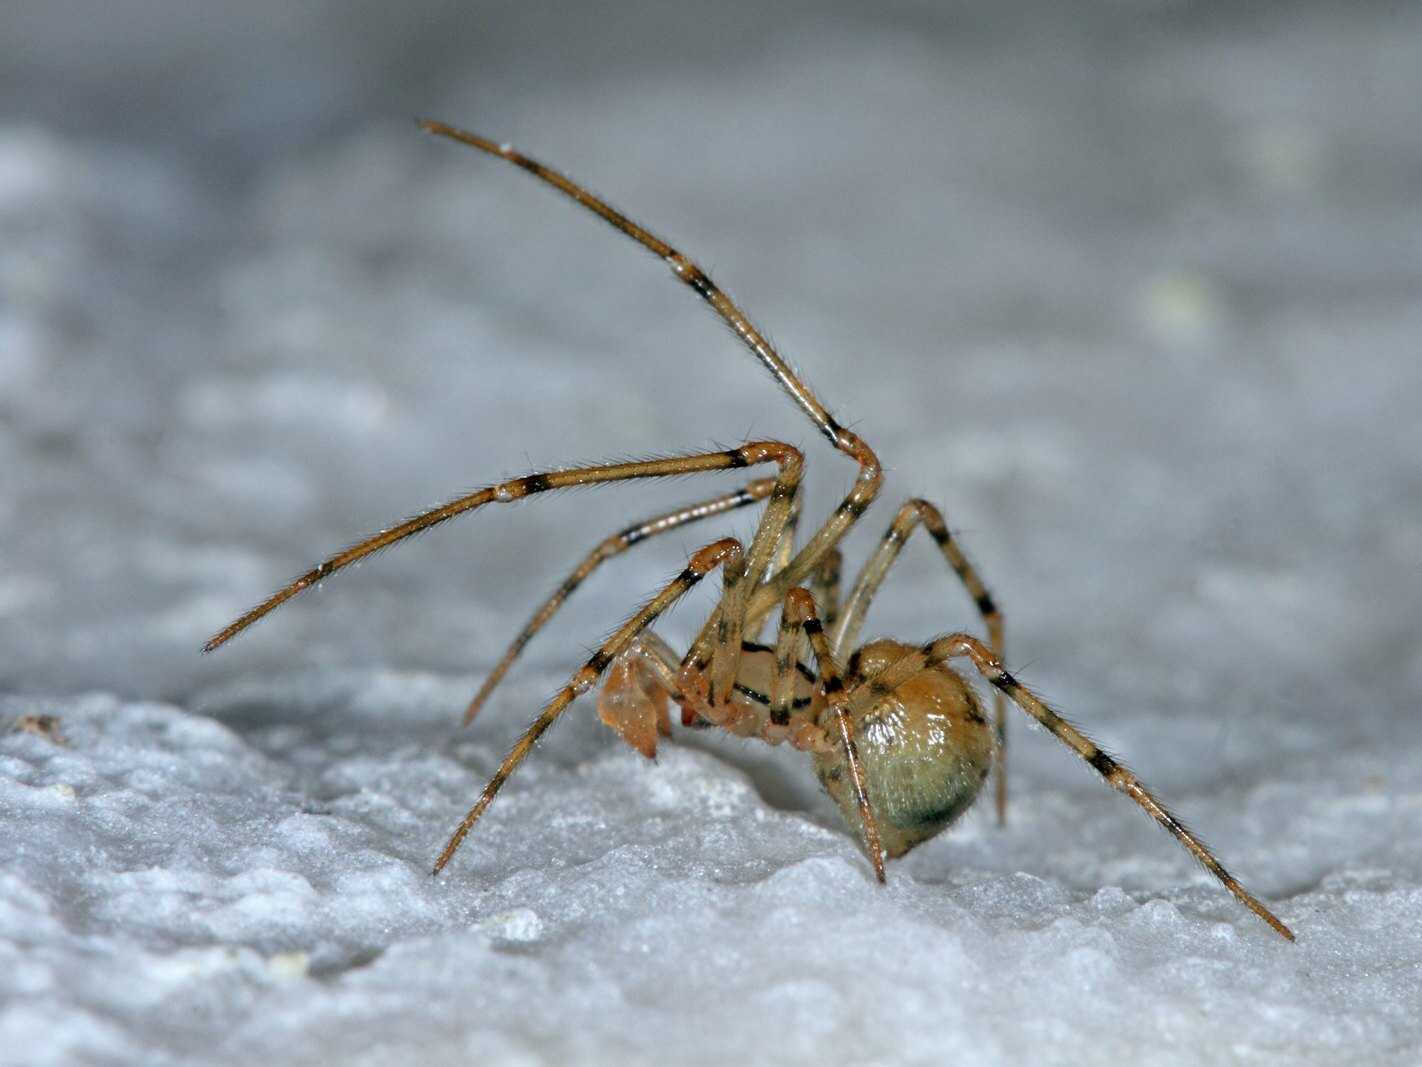 DOPPELTE EHRE FÜR EINEN WINZLING: Die nur wenige Millimeter große Gefleckte Höhlenspinne (im Bild das Männchen) ist gleichzeitig Höhlentier und Spinne des Jahres.